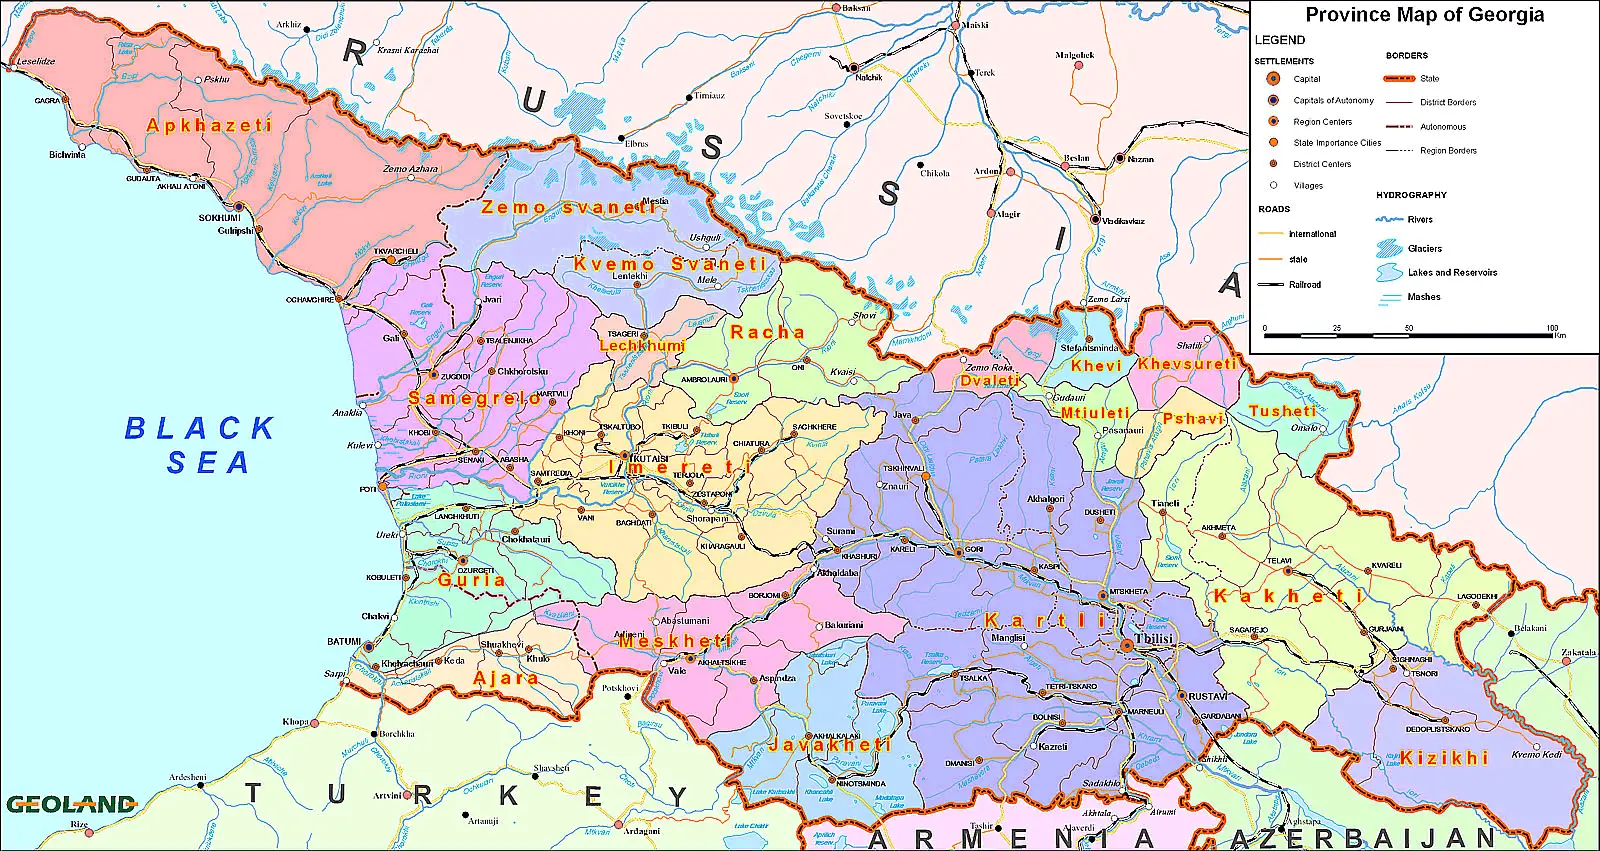 Карта грузии подробная на русском. Грузия на карте. Реки Грузии на карте. Грузия на мировой карте. Карта Грузии подробная с городами.